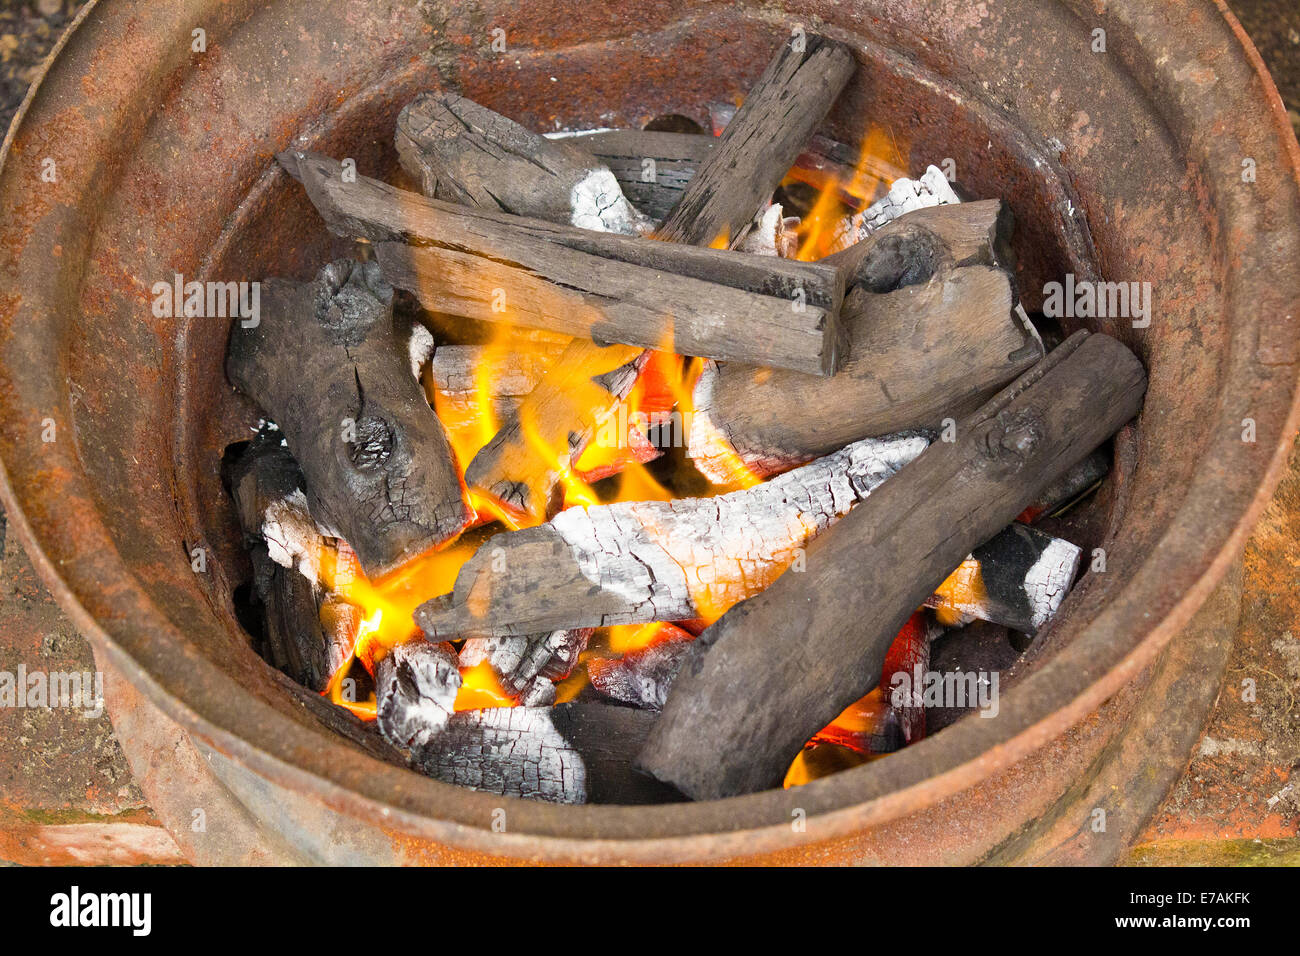 Le charbon de bois brûlant à bord métallique Banque D'Images